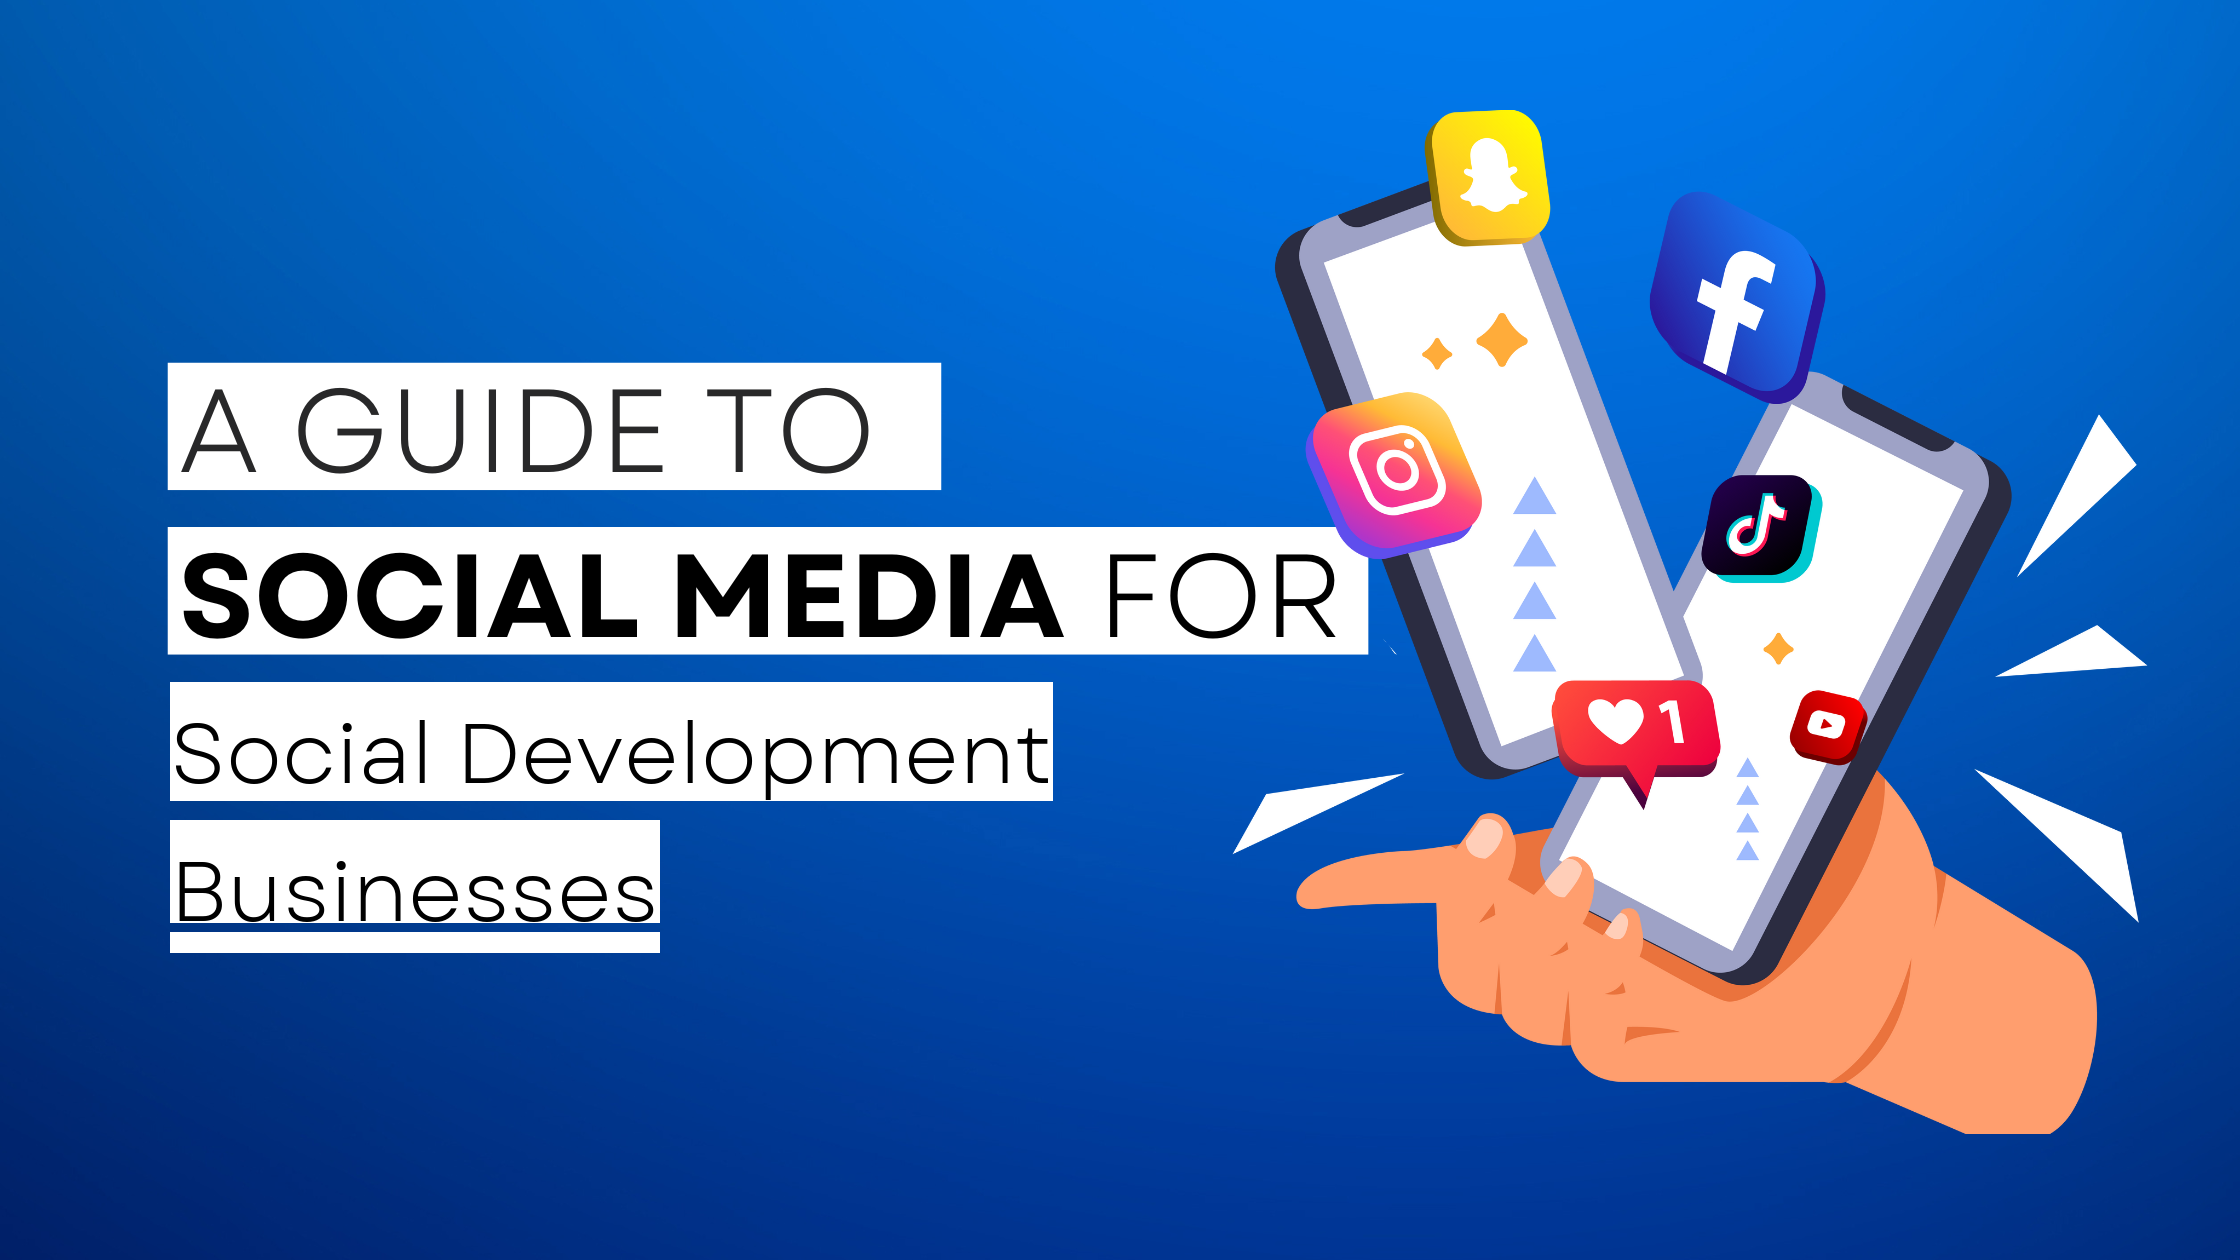 How to start Social Development on social media